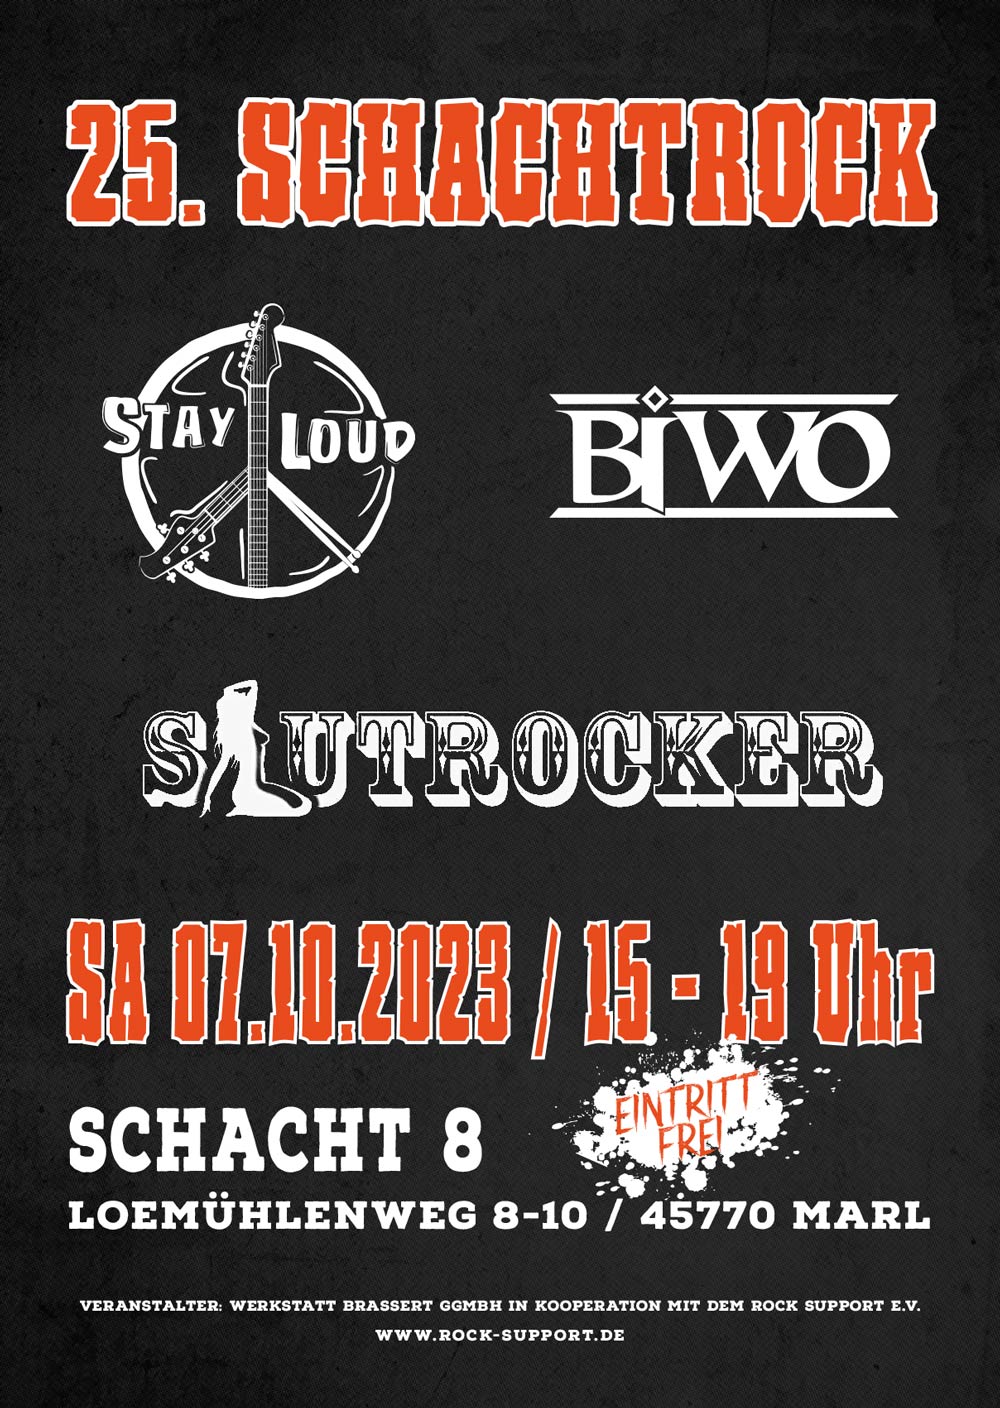 25. Schachtrock - Stay Loud + Slutrocker + BIWO - 07.10.2023, Schacht8 Marl